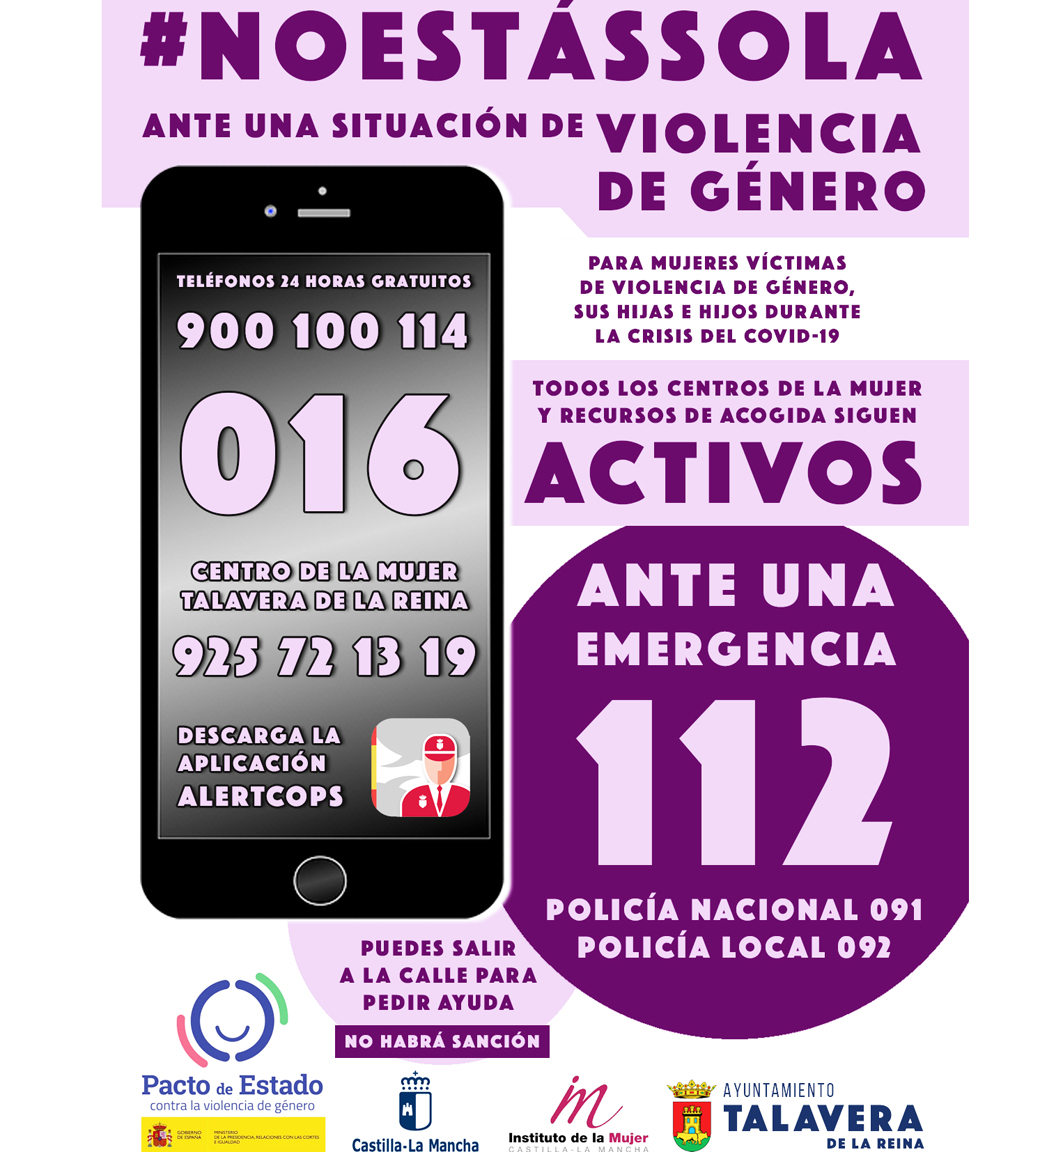 La concejalía de Violencia de Género de Talavera lanza una campaña solidaria